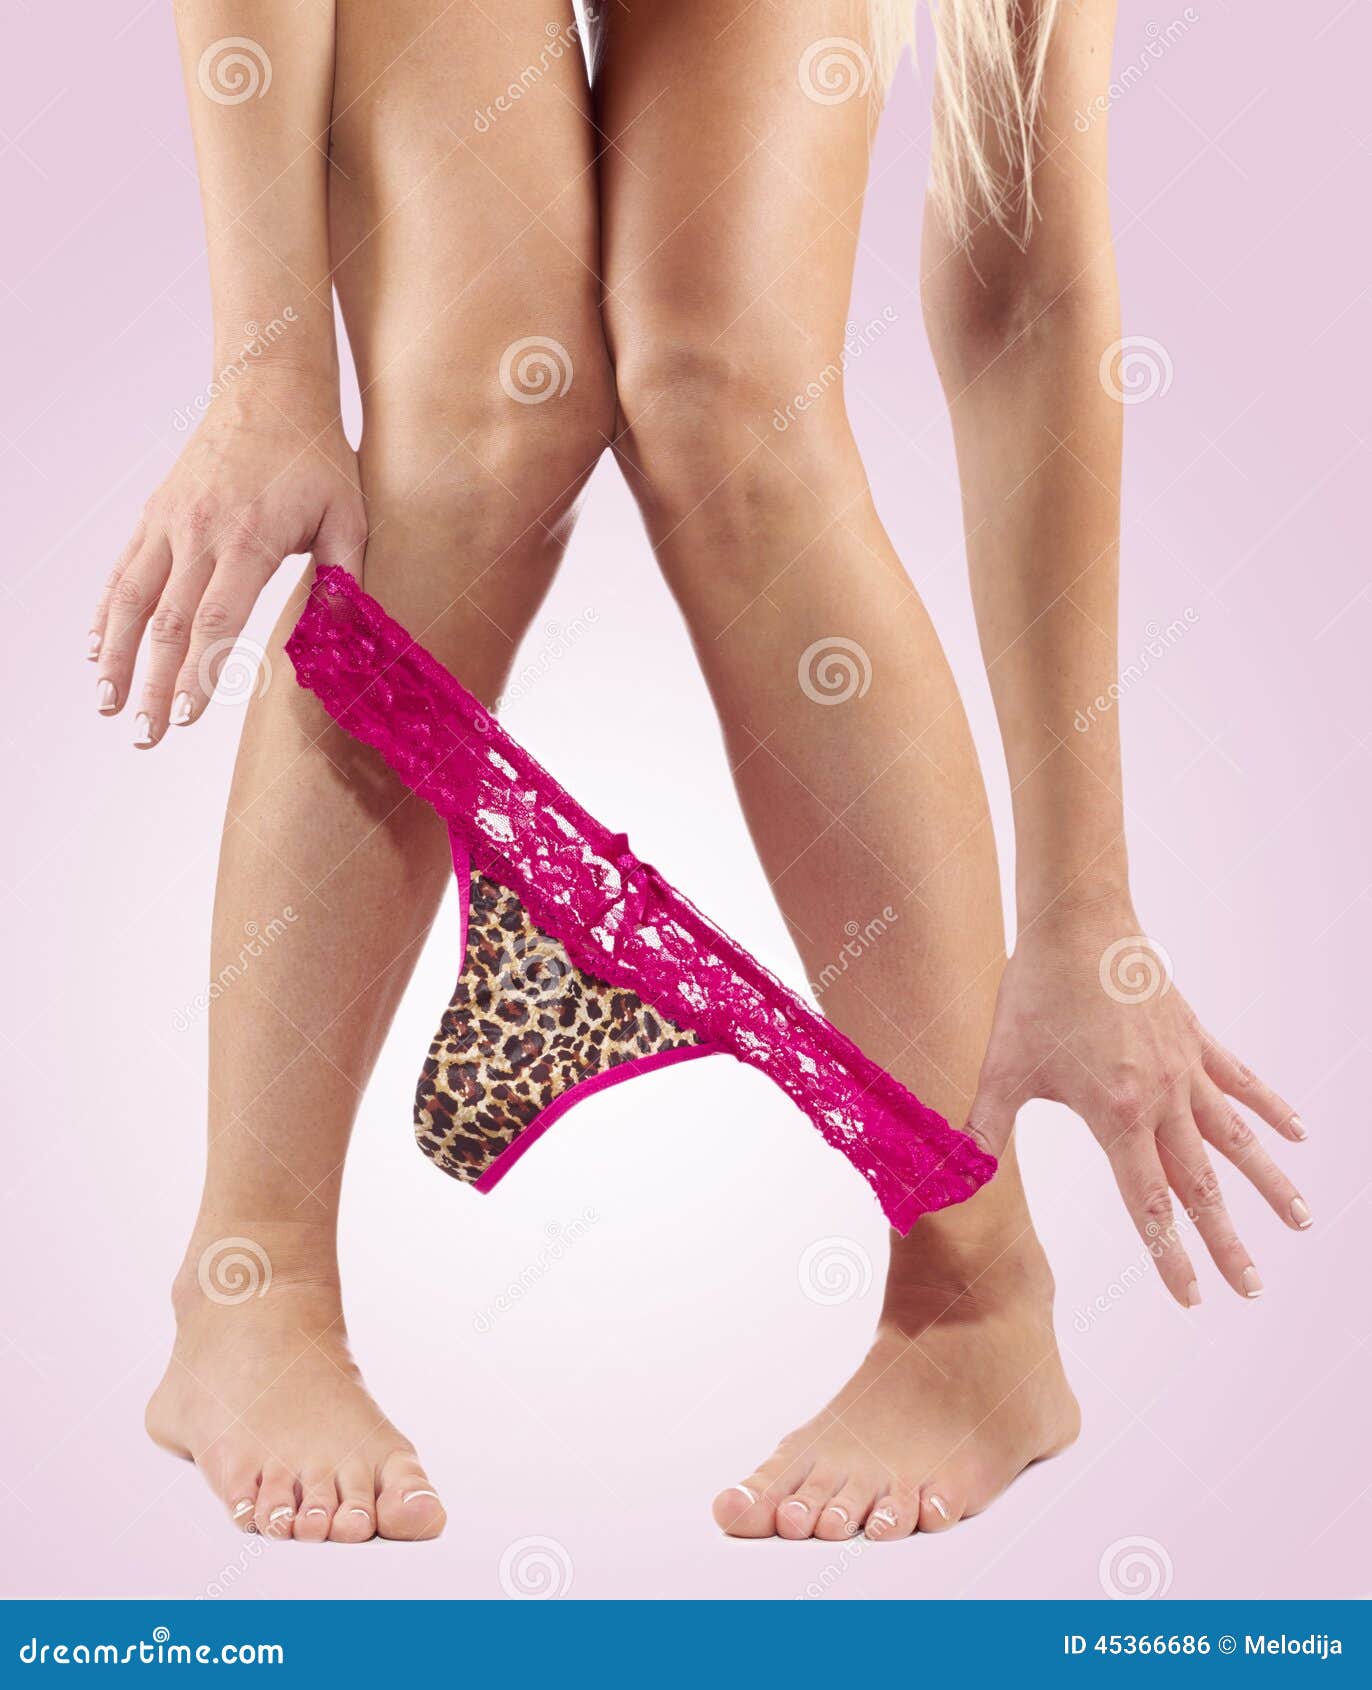 https://thumbs.dreamstime.com/z/sexy-legs-pulling-panties-down-red-45366686.jpg